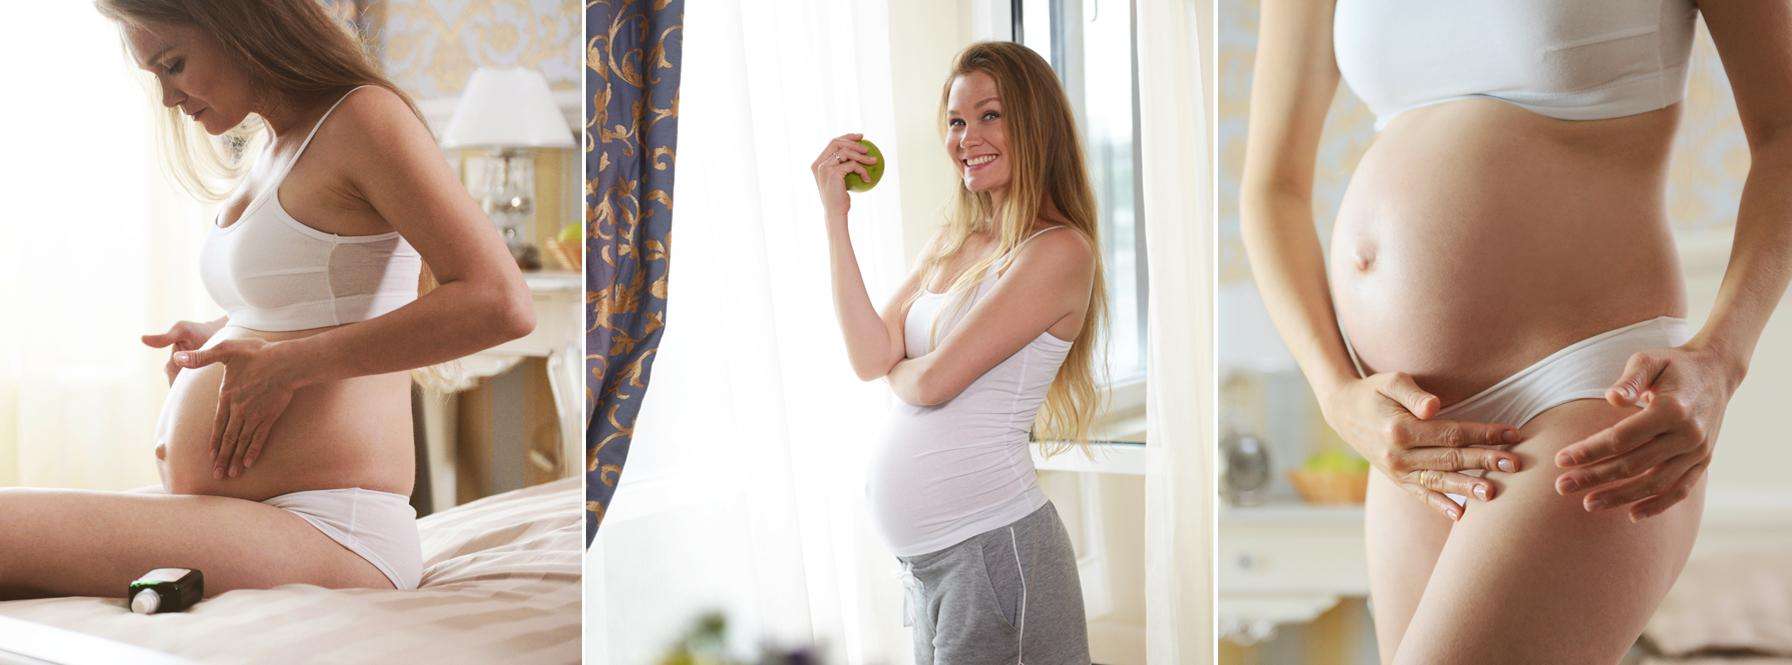 18 неделя беременности от зачатия